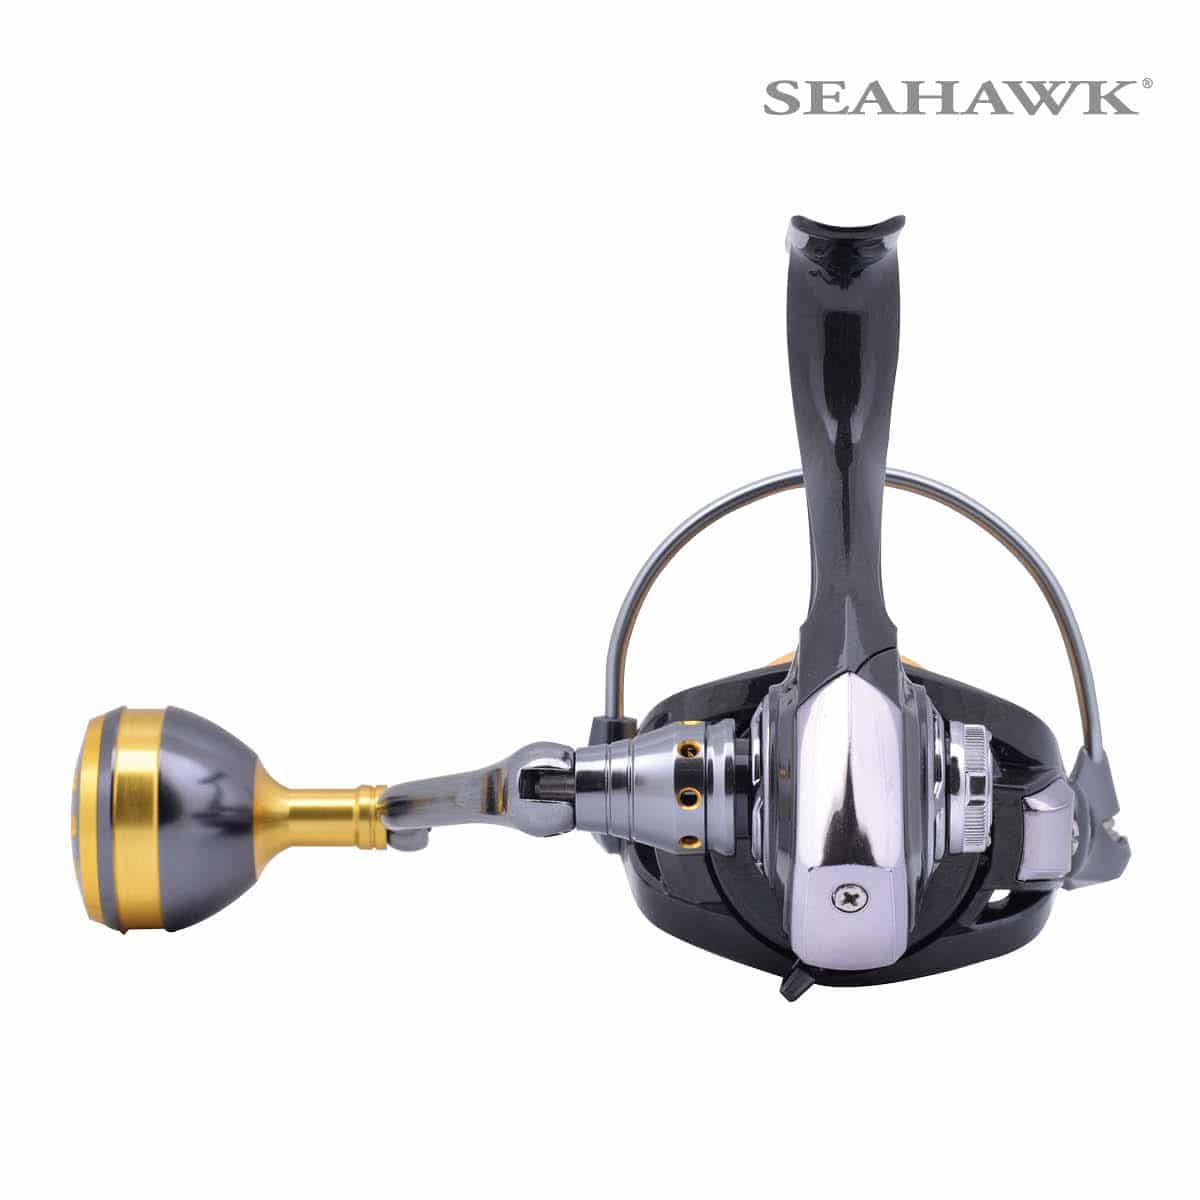 seahawk-carbon-pro-cpro-03